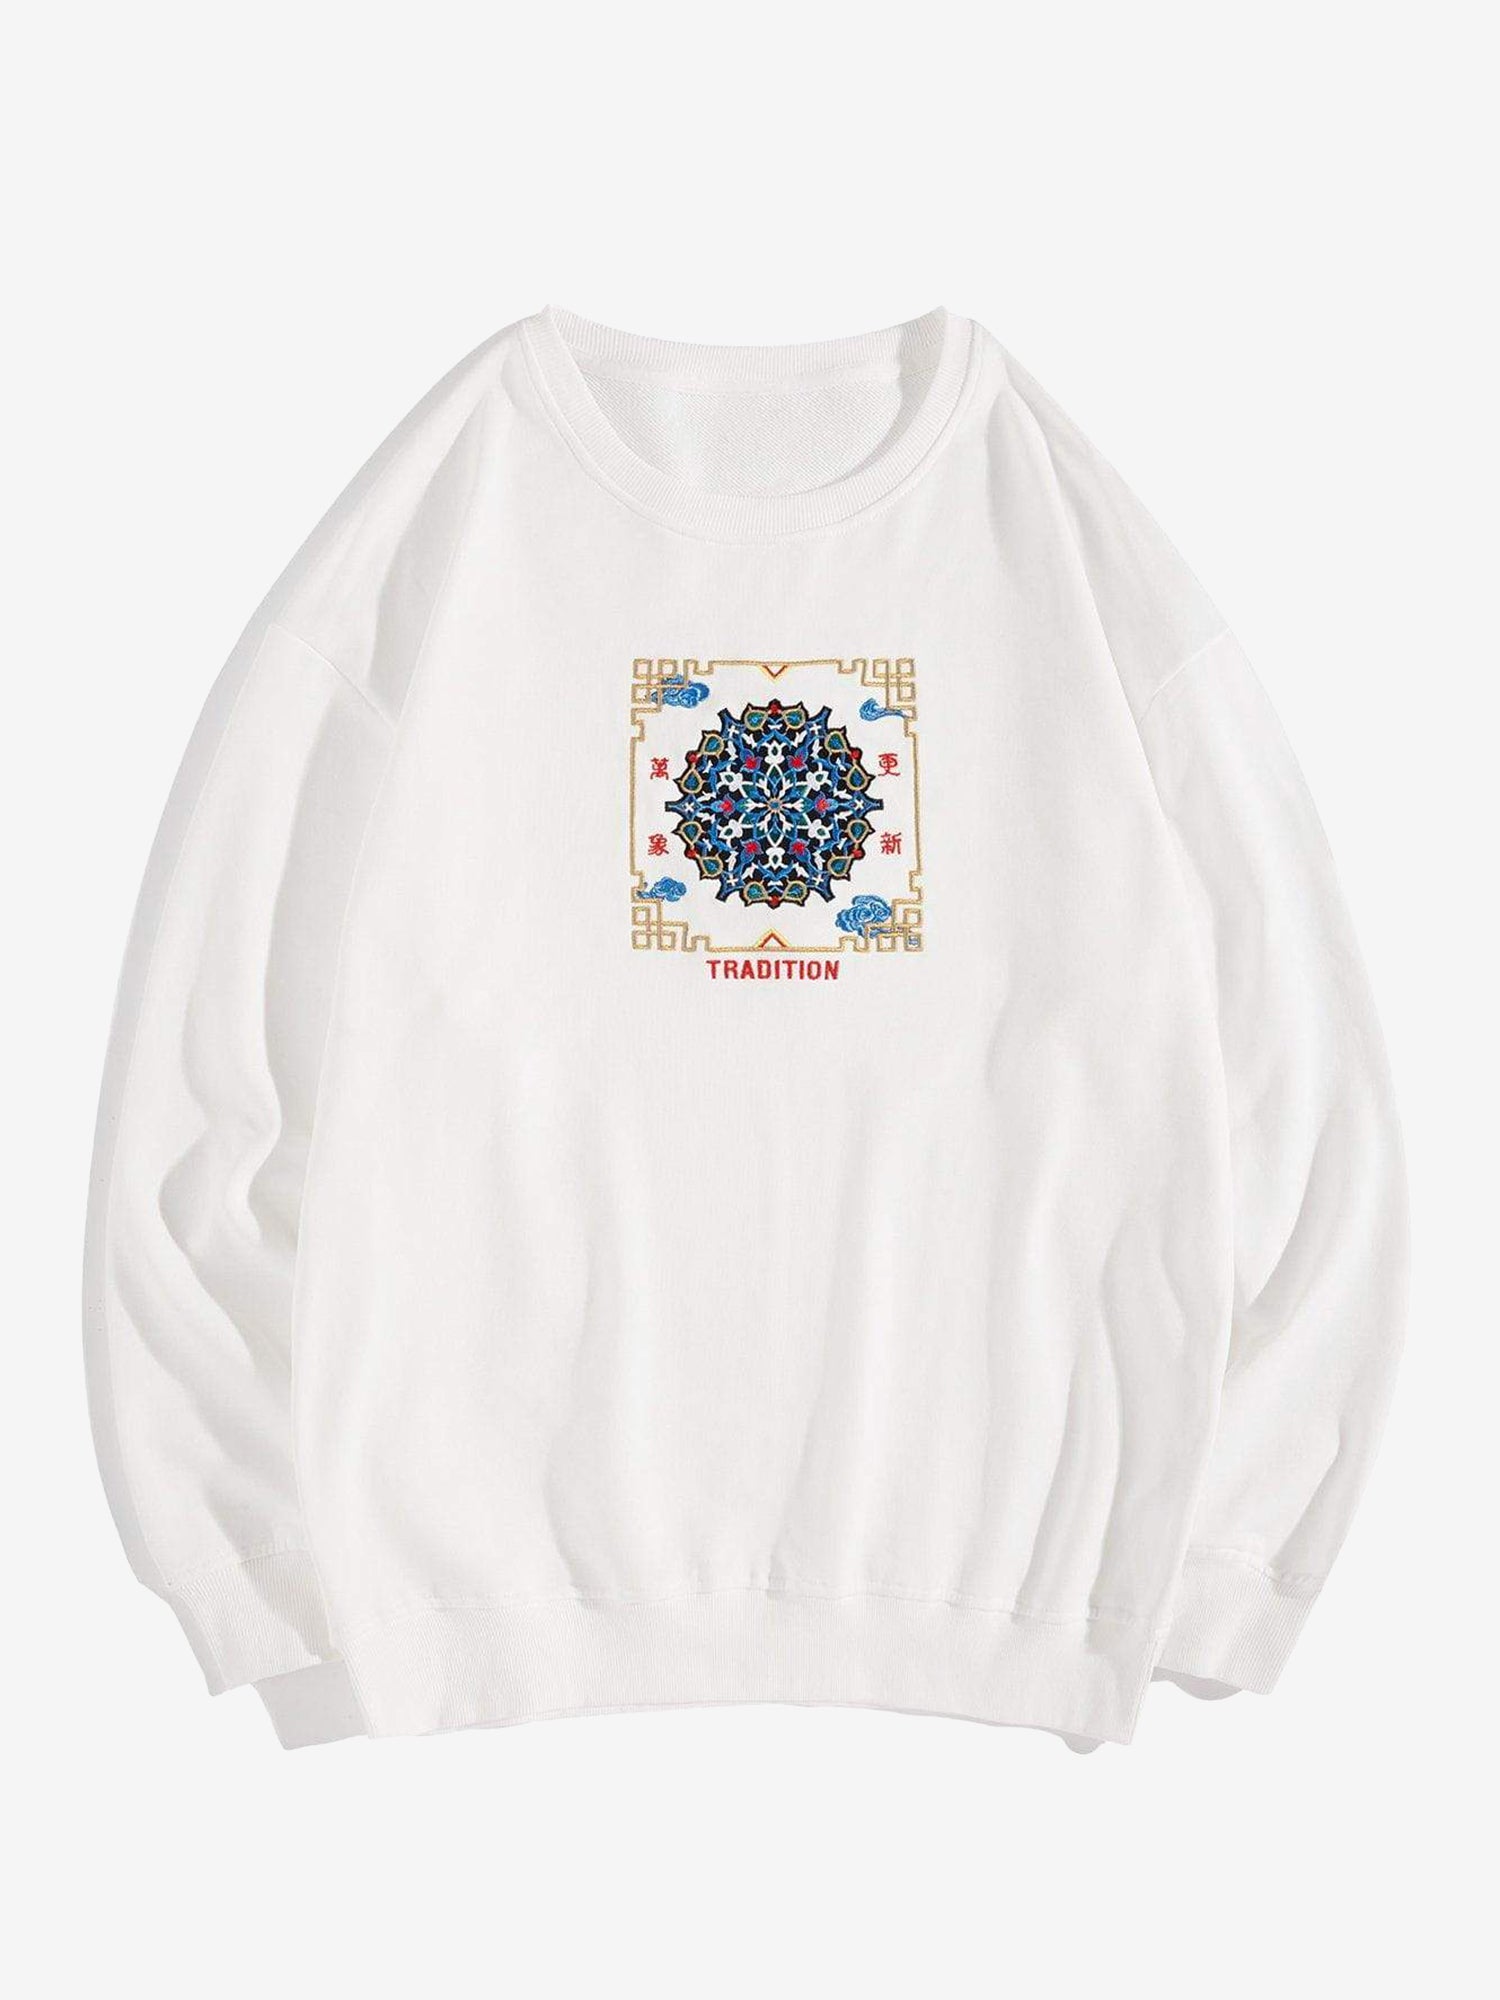 JUSTNOTAG Sweatshirt mit chinesischen Kanji-Stickereien